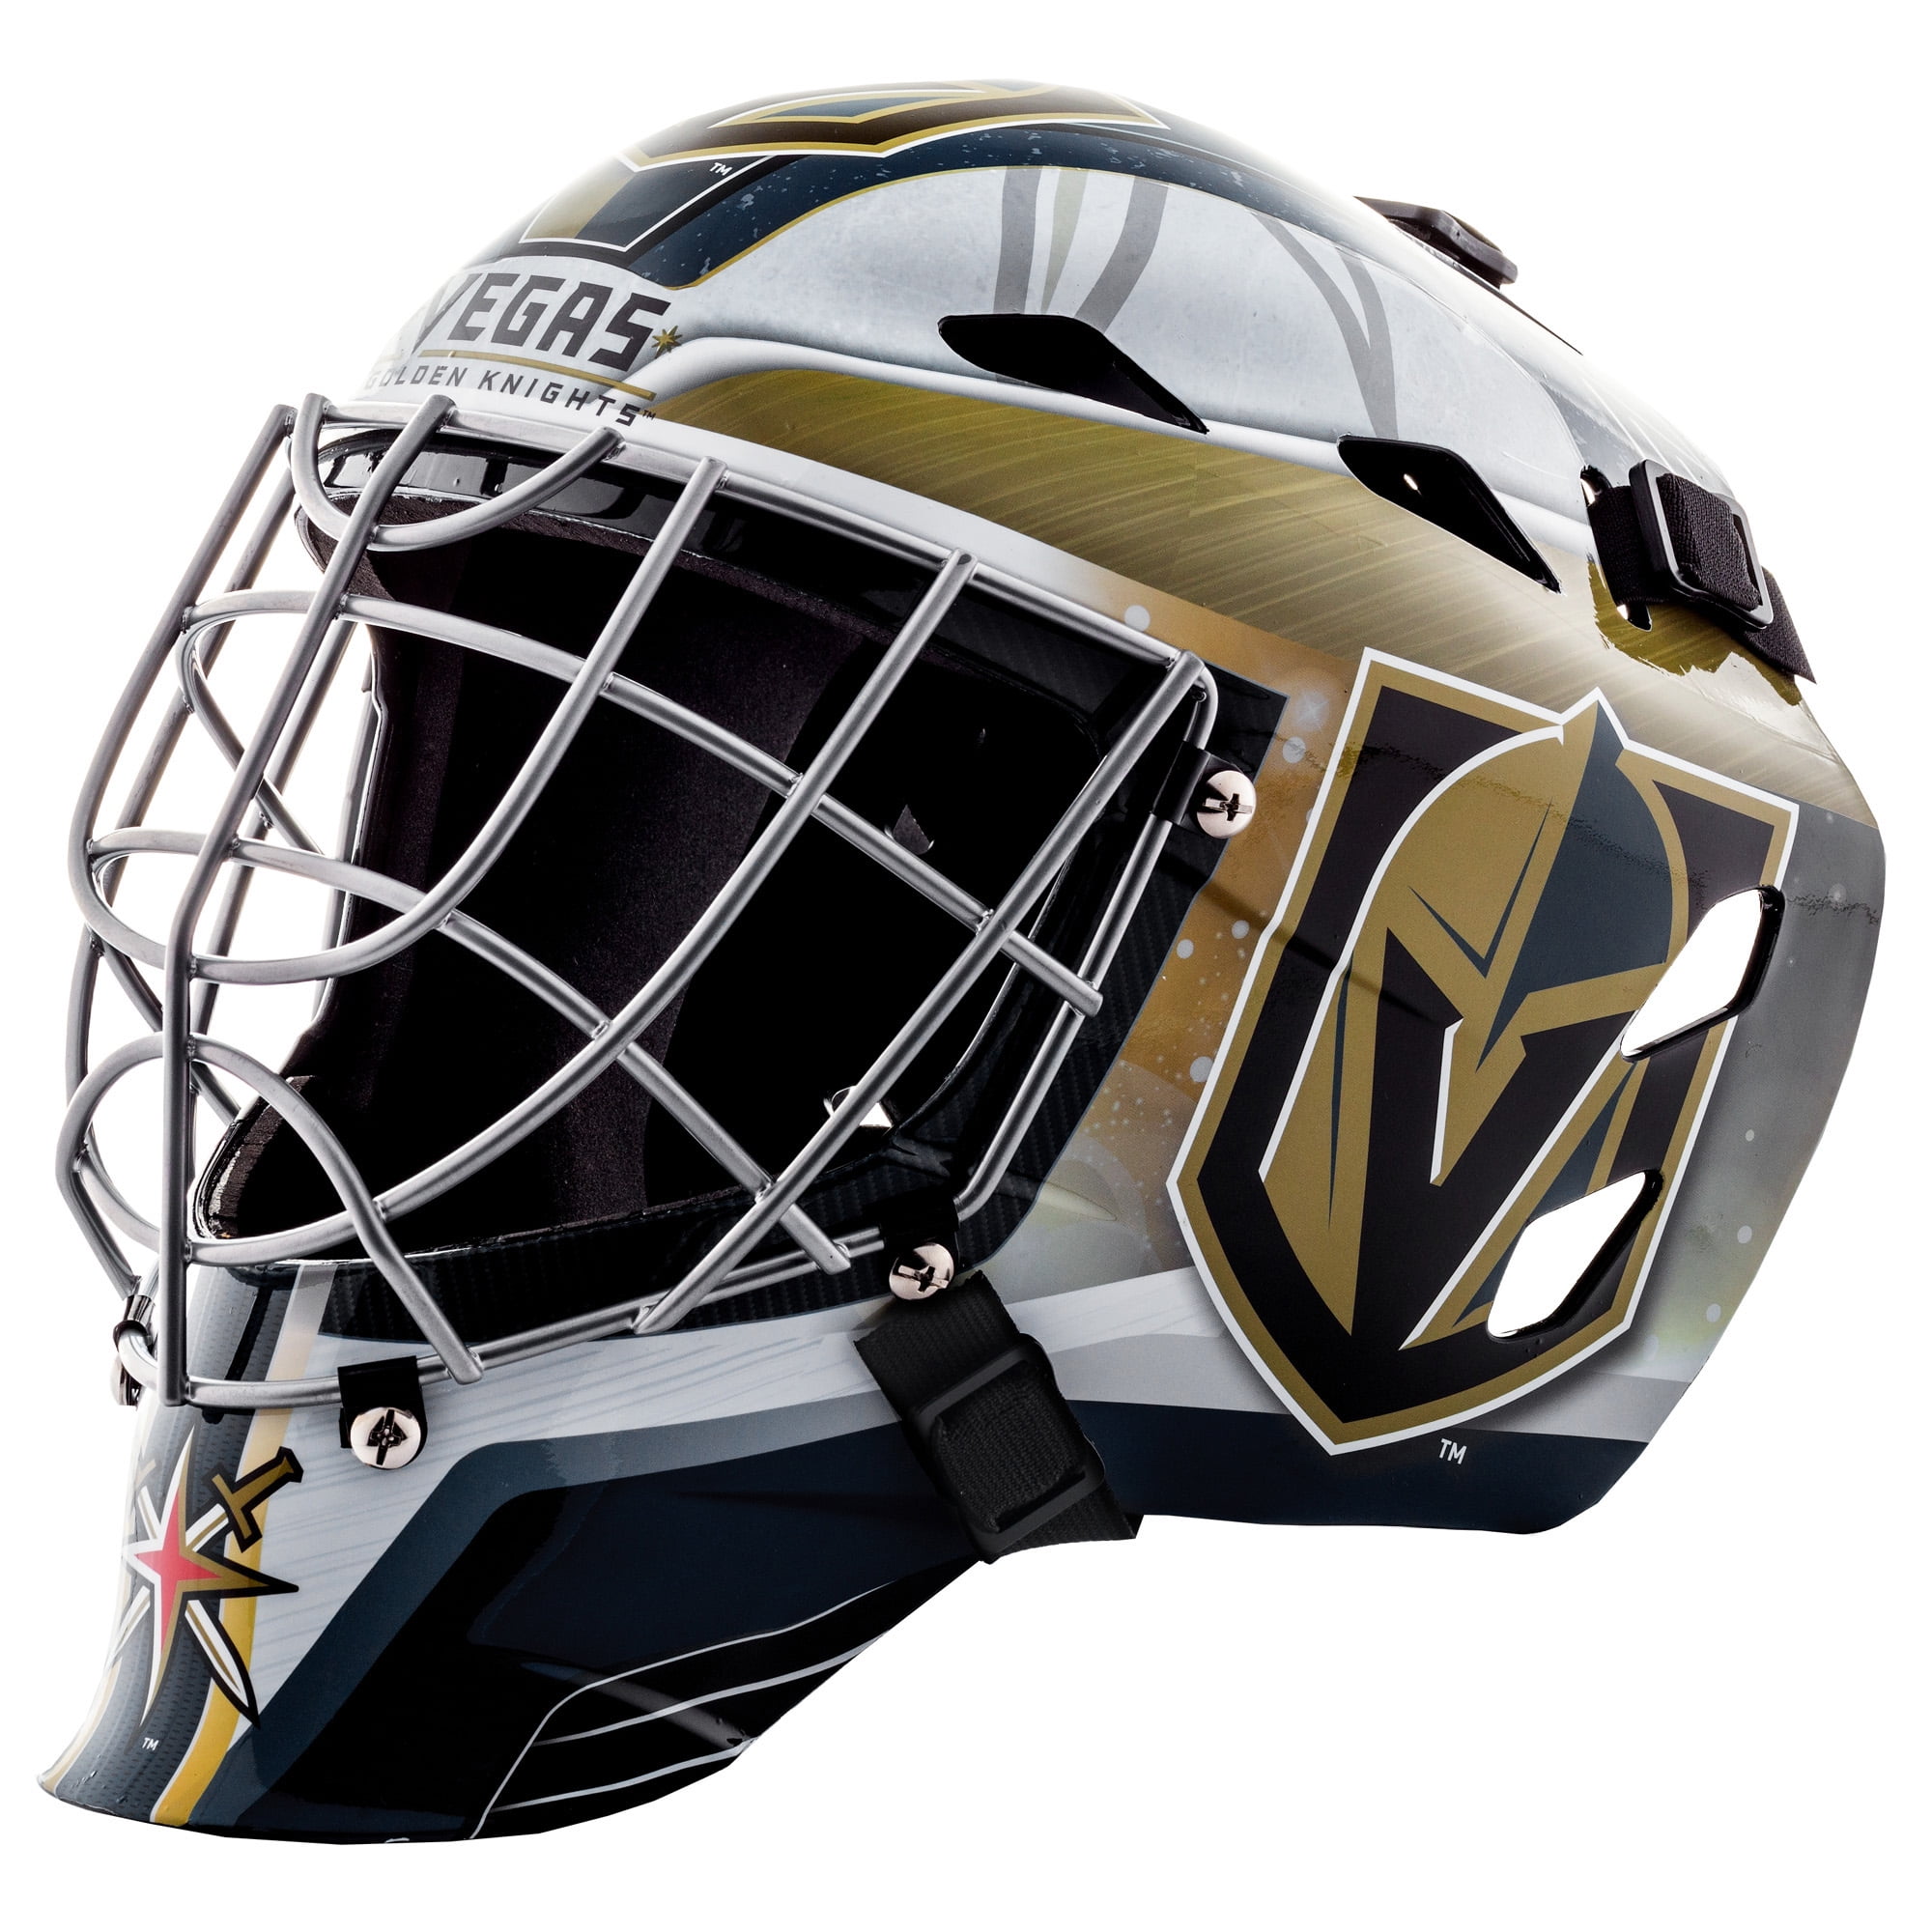 Franklin GFM 1500 NHL Street Hockey Goalie Mask